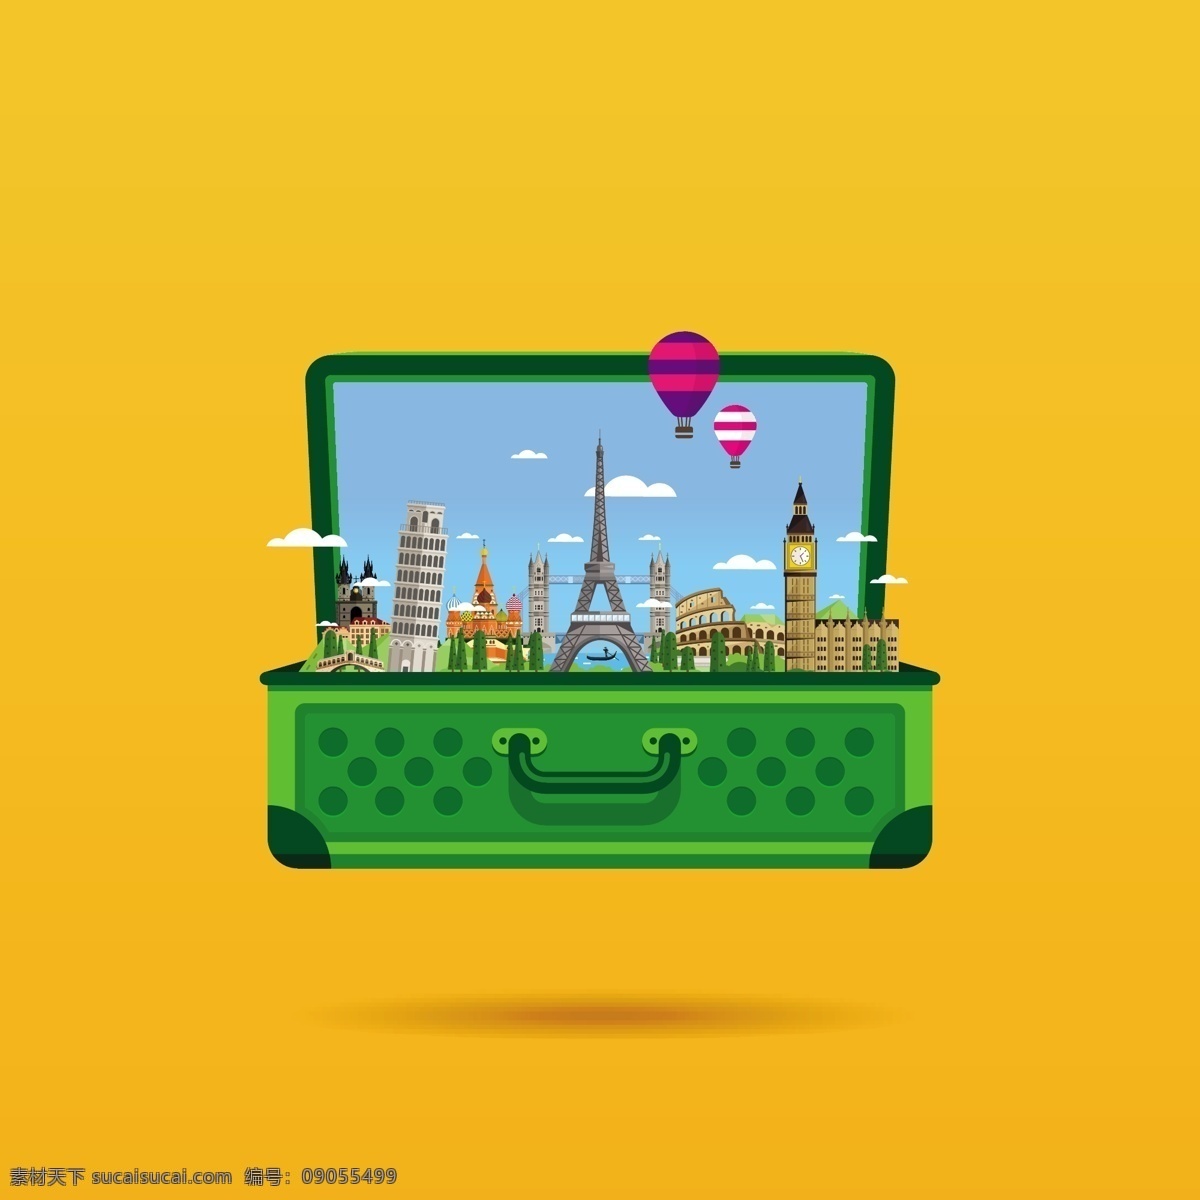 行李箱 旅游 观景 矢量 地标 风景 绿色 平面素材 设计素材 矢量素材 行李